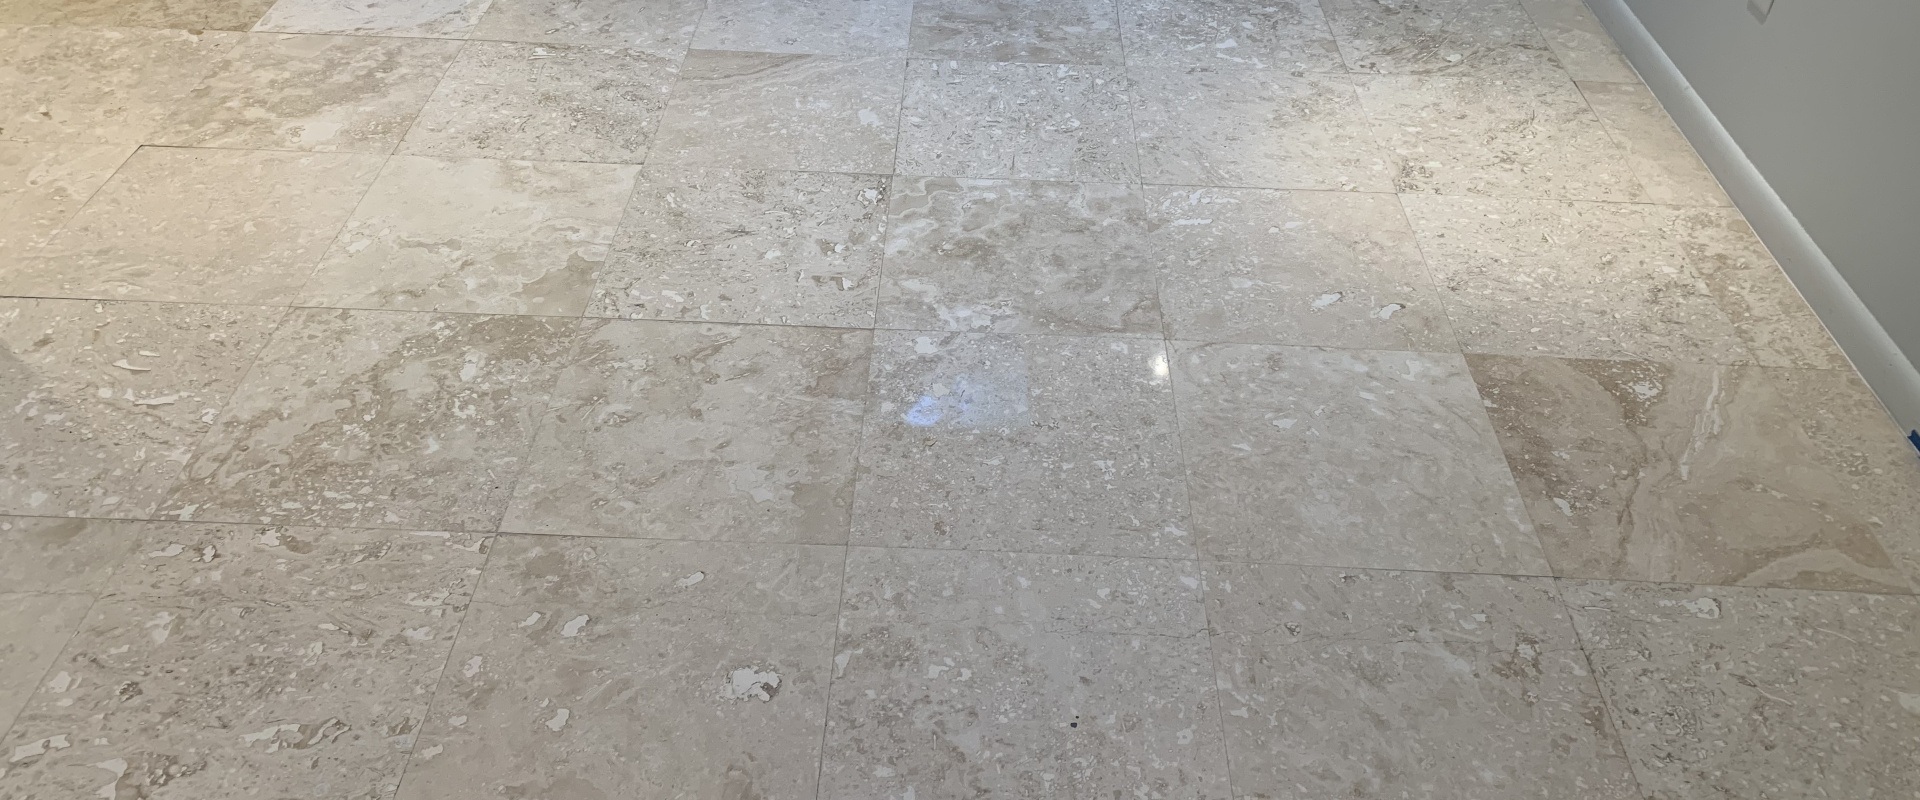 Travertine Floor Restoration Near Me: Expert Services in Dallas/Fort Worth DFW Texas